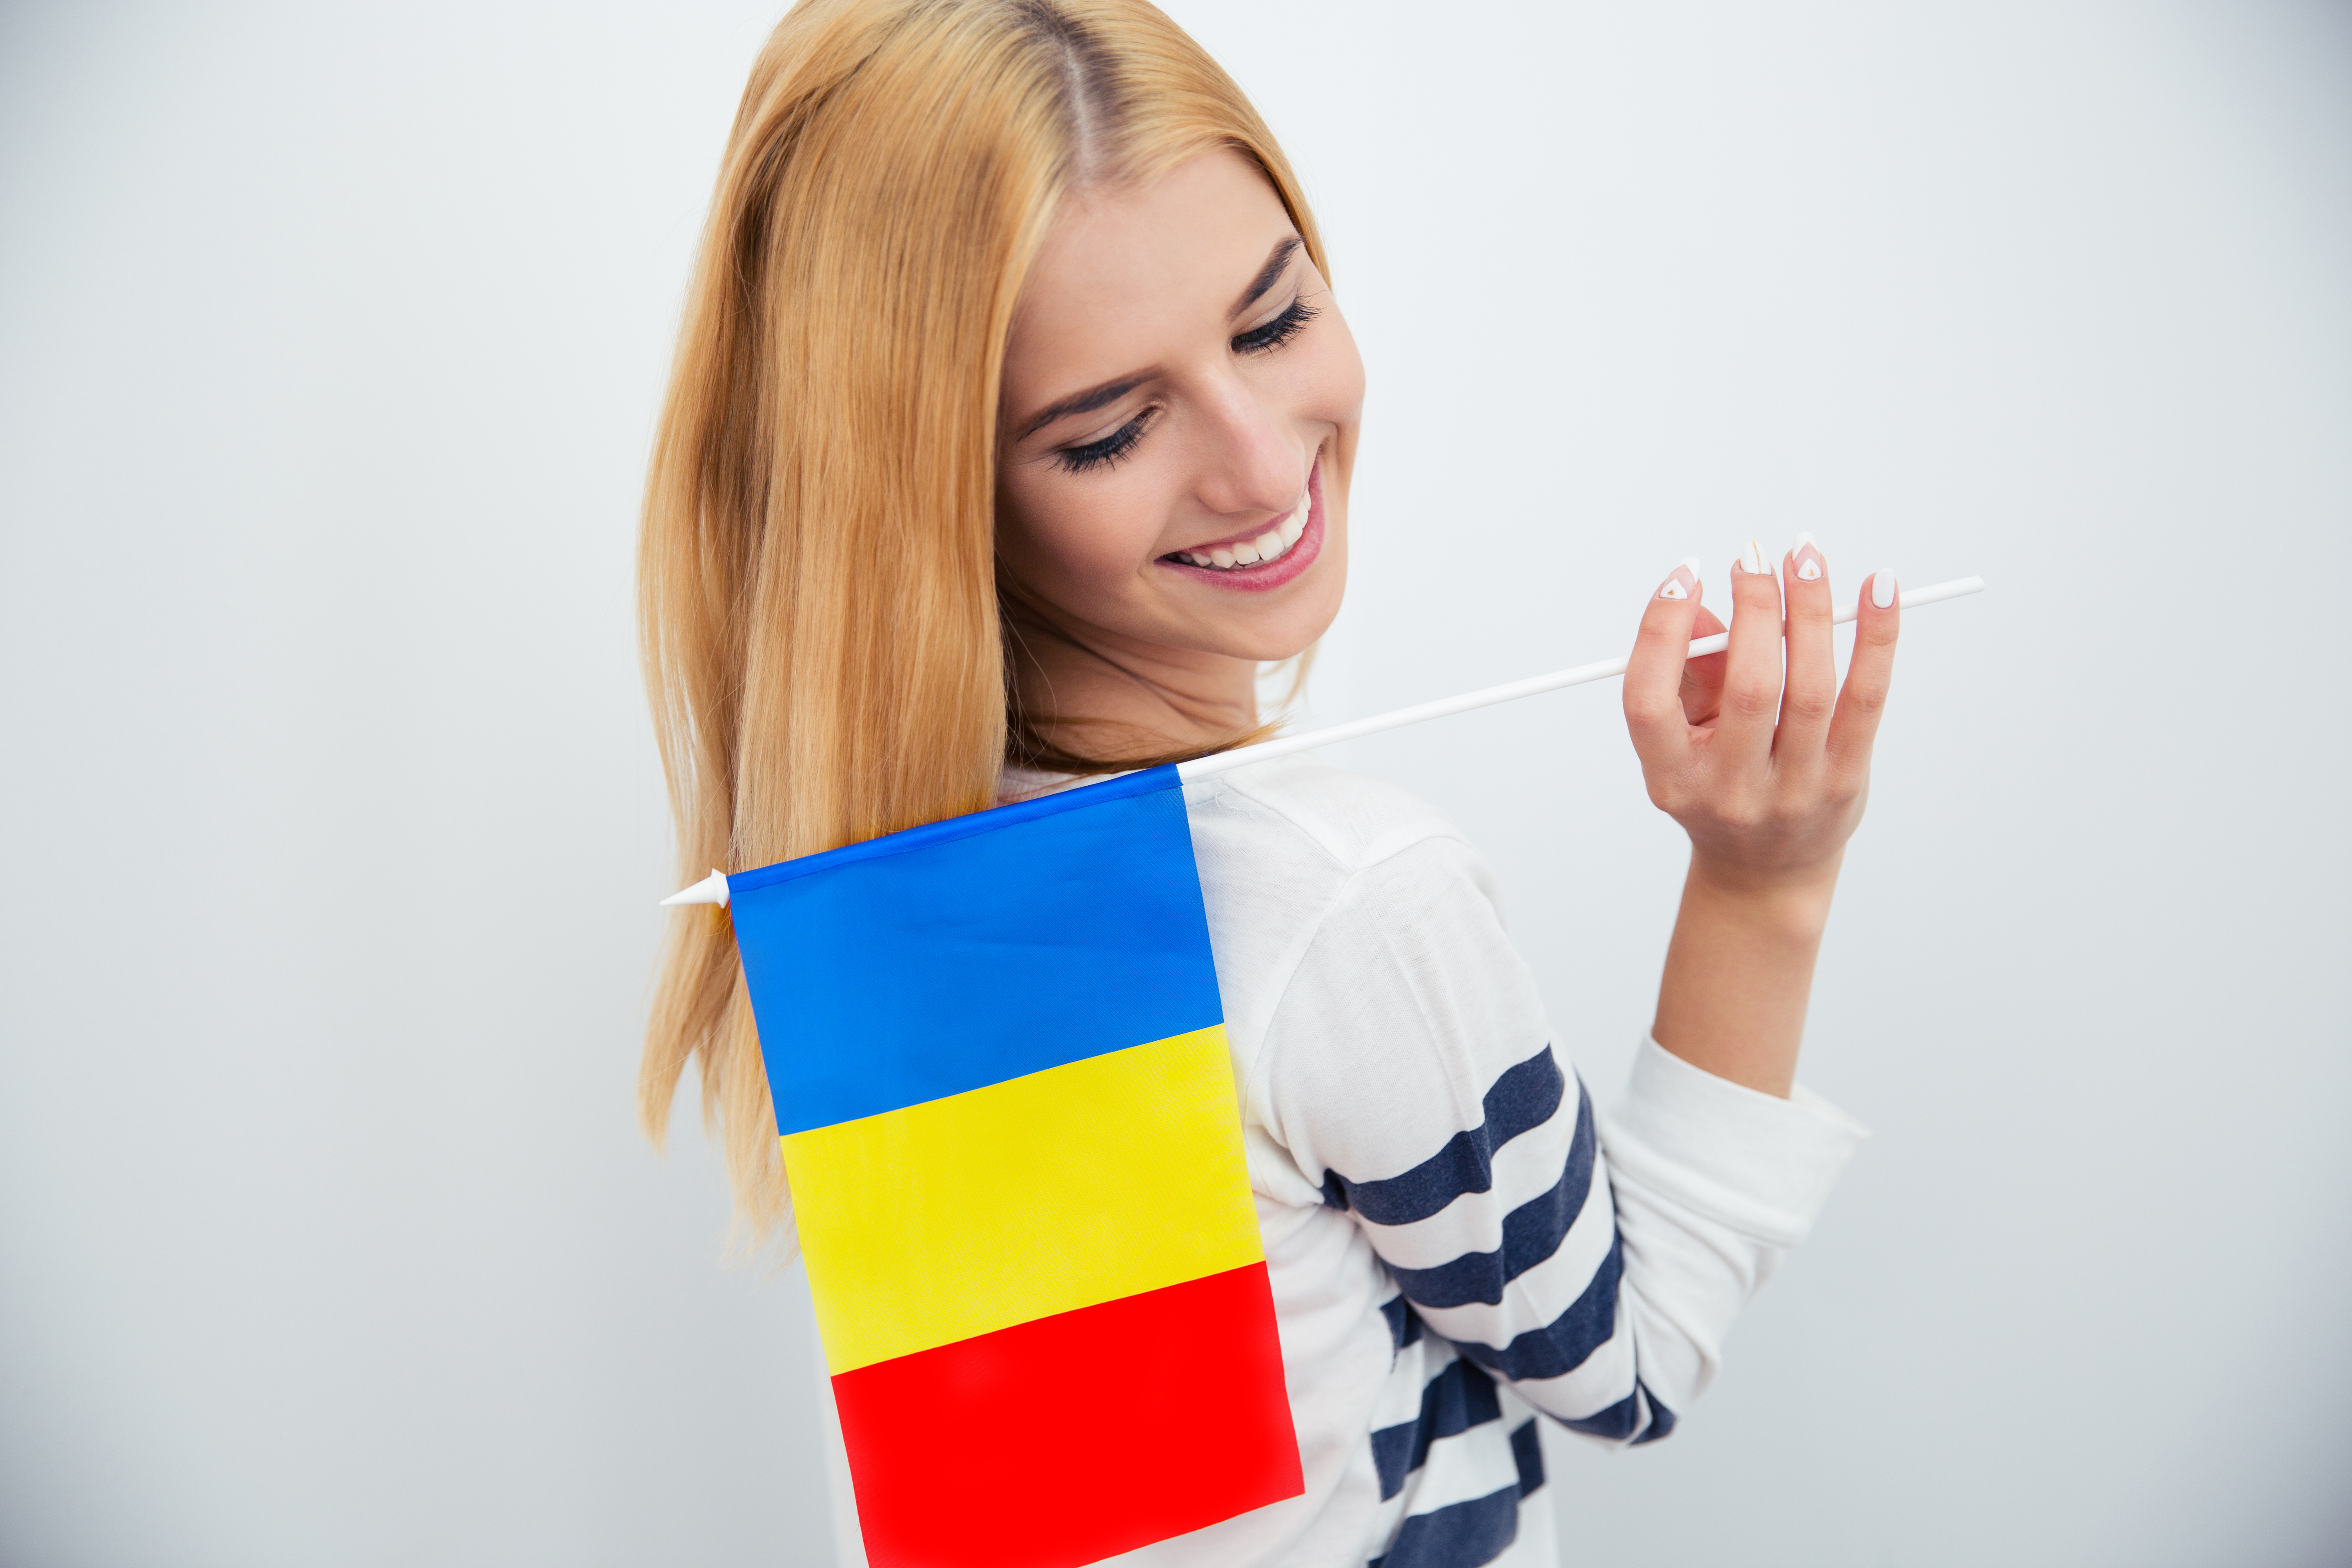 Студенческая виза в Румынию: как получить в 2023 году, документы, сроки, цена, продление отказ